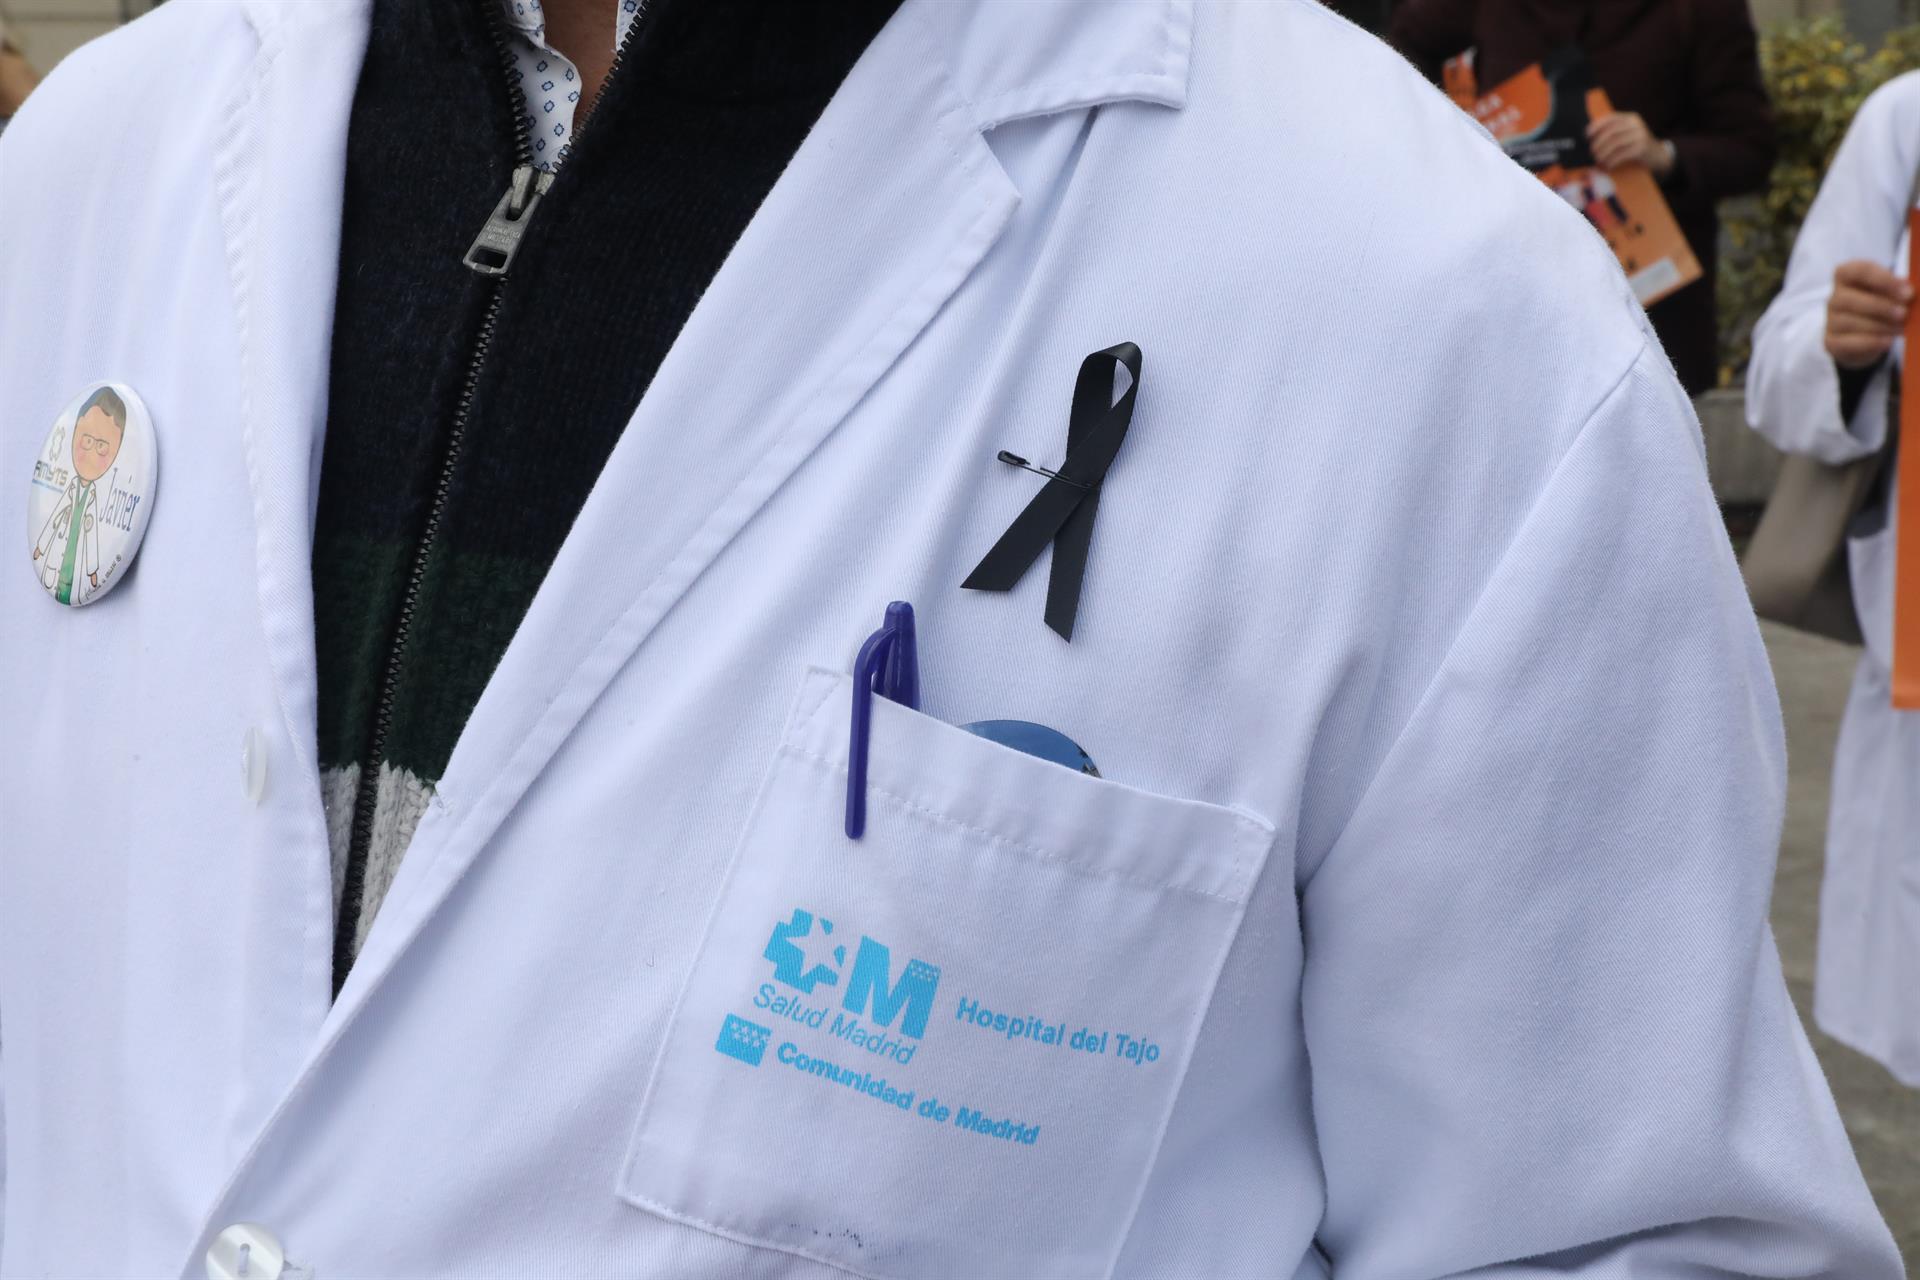 Detalle de un lazo negro colgado en la bata de un médico